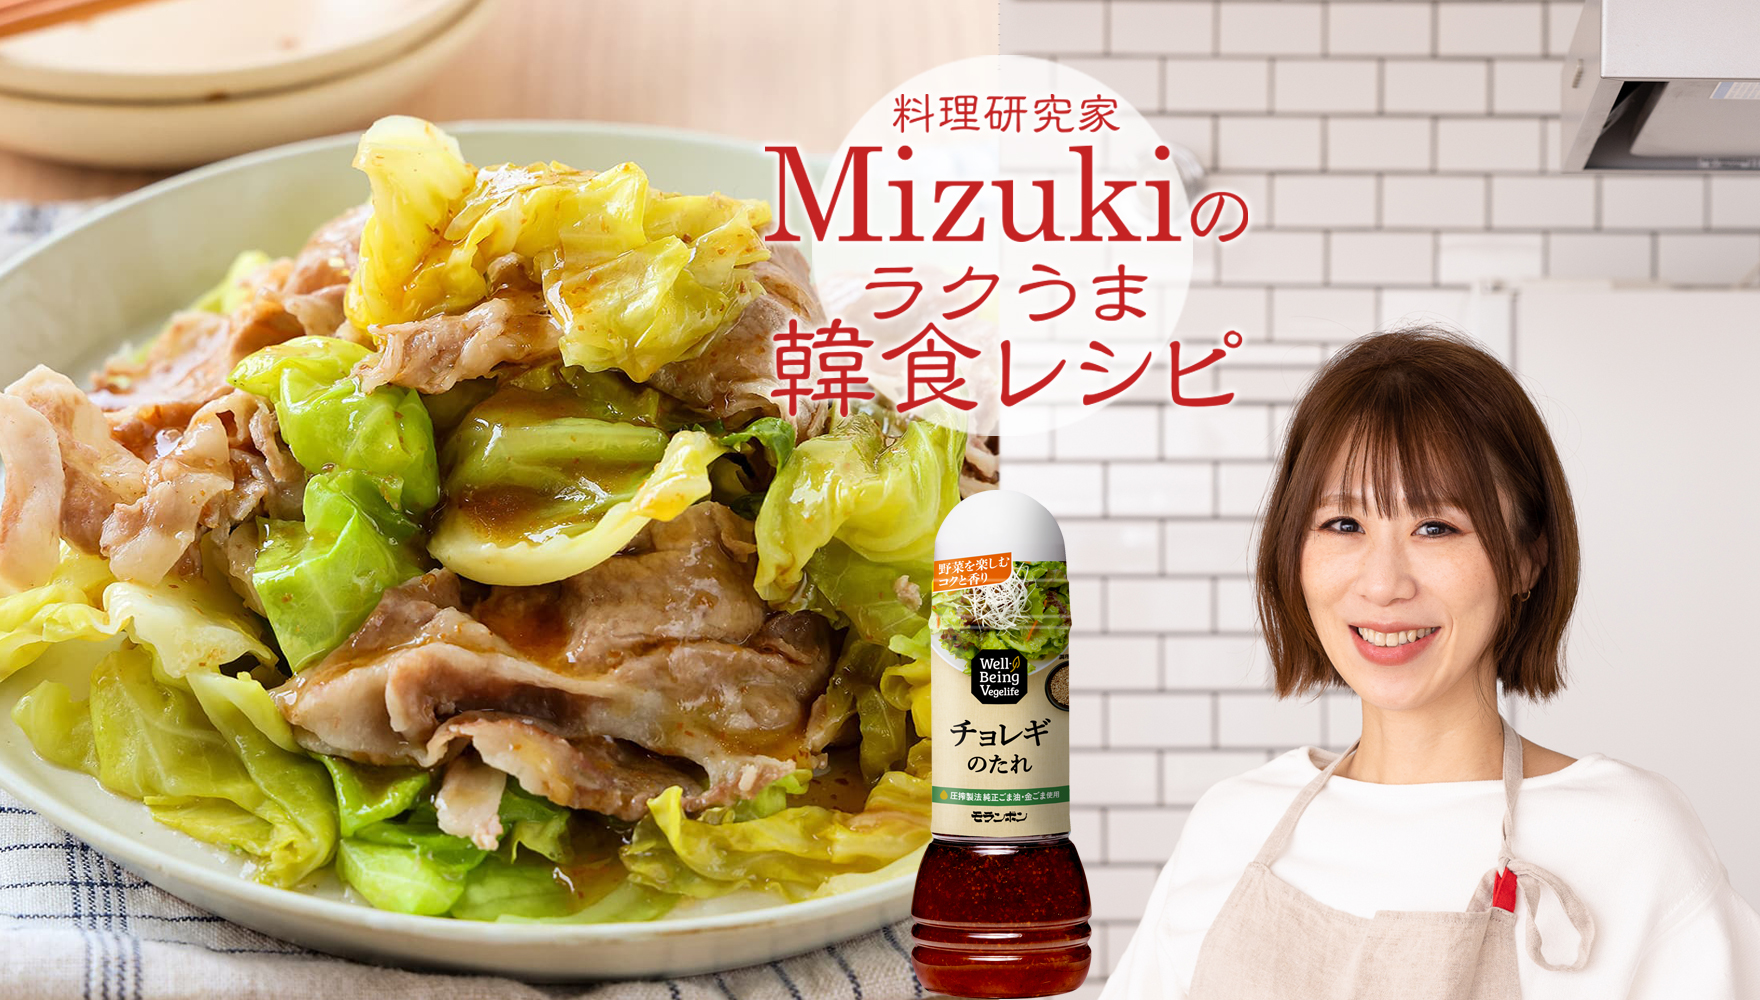 Mizukiの韓食レシピ